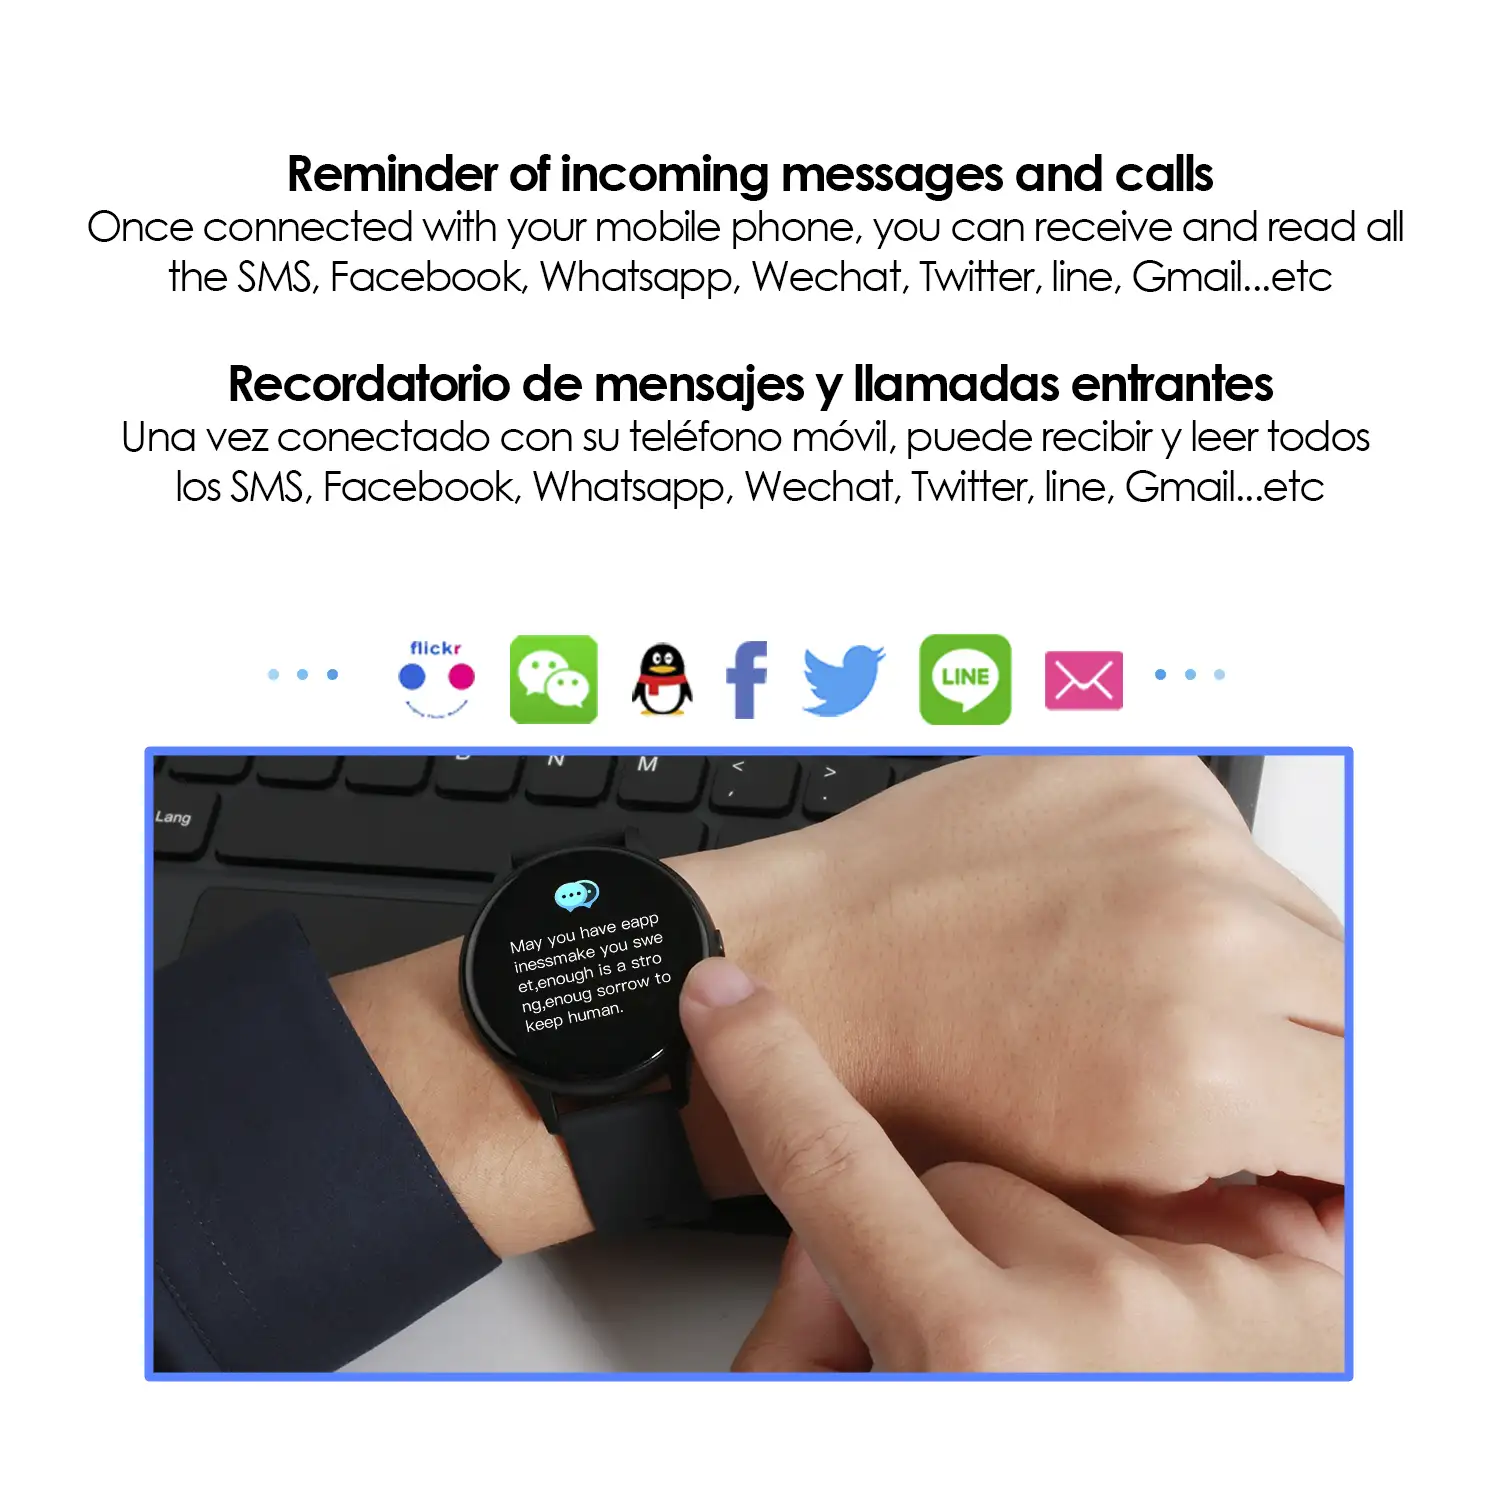 Smartwatch K21 con temperatura corporal, monitor cardiaco y modo multideporte